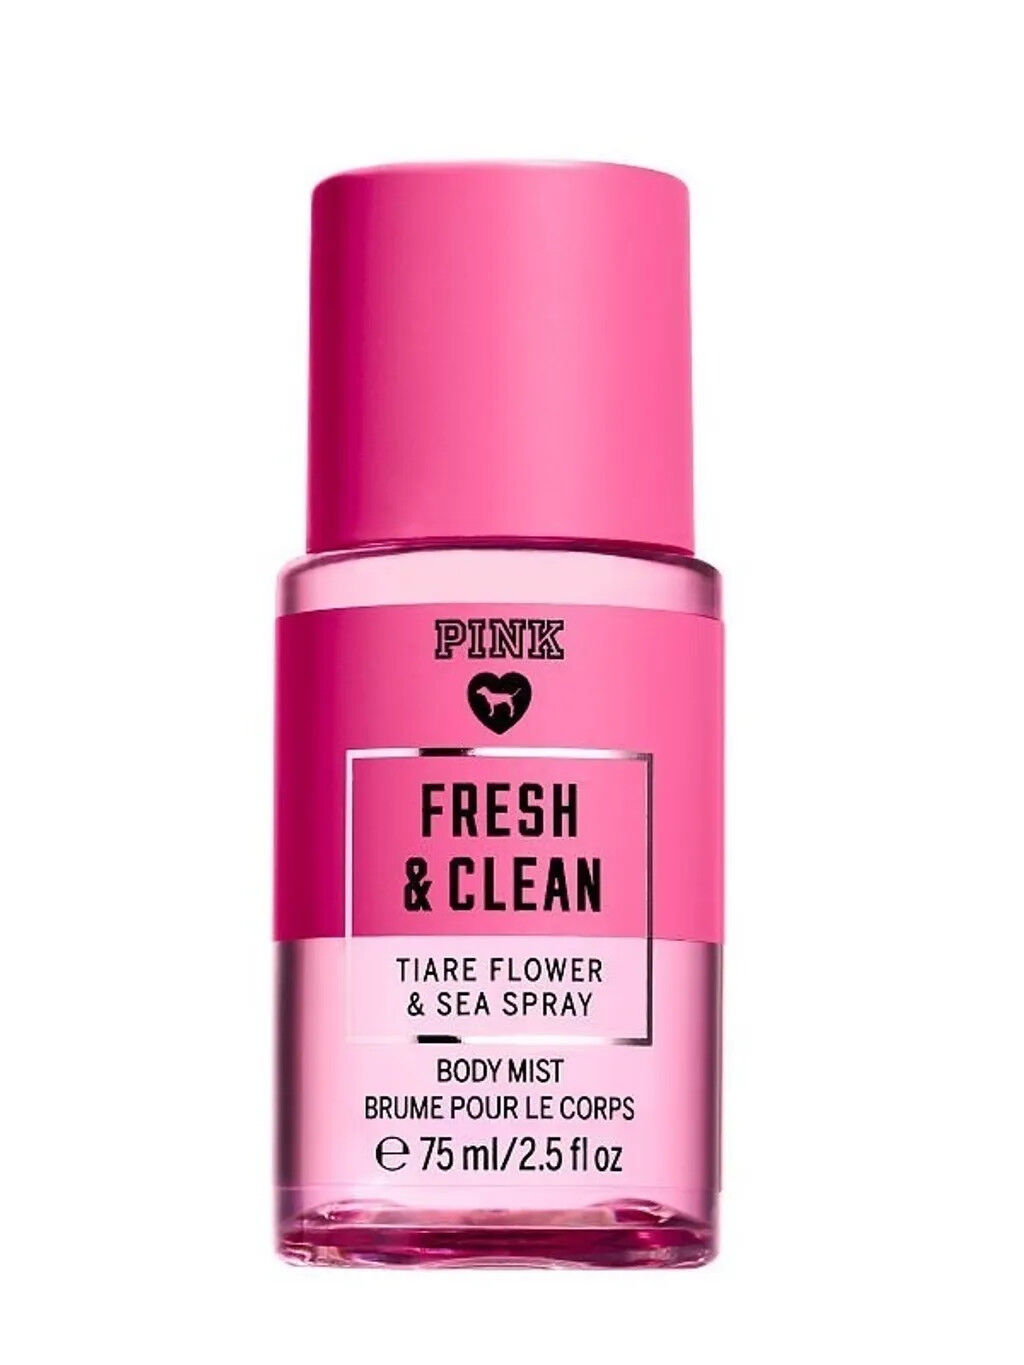 Victoria's Secret Pink Fresh & Clean Tiare Flower & Sea Spray Body Mist 75 ml